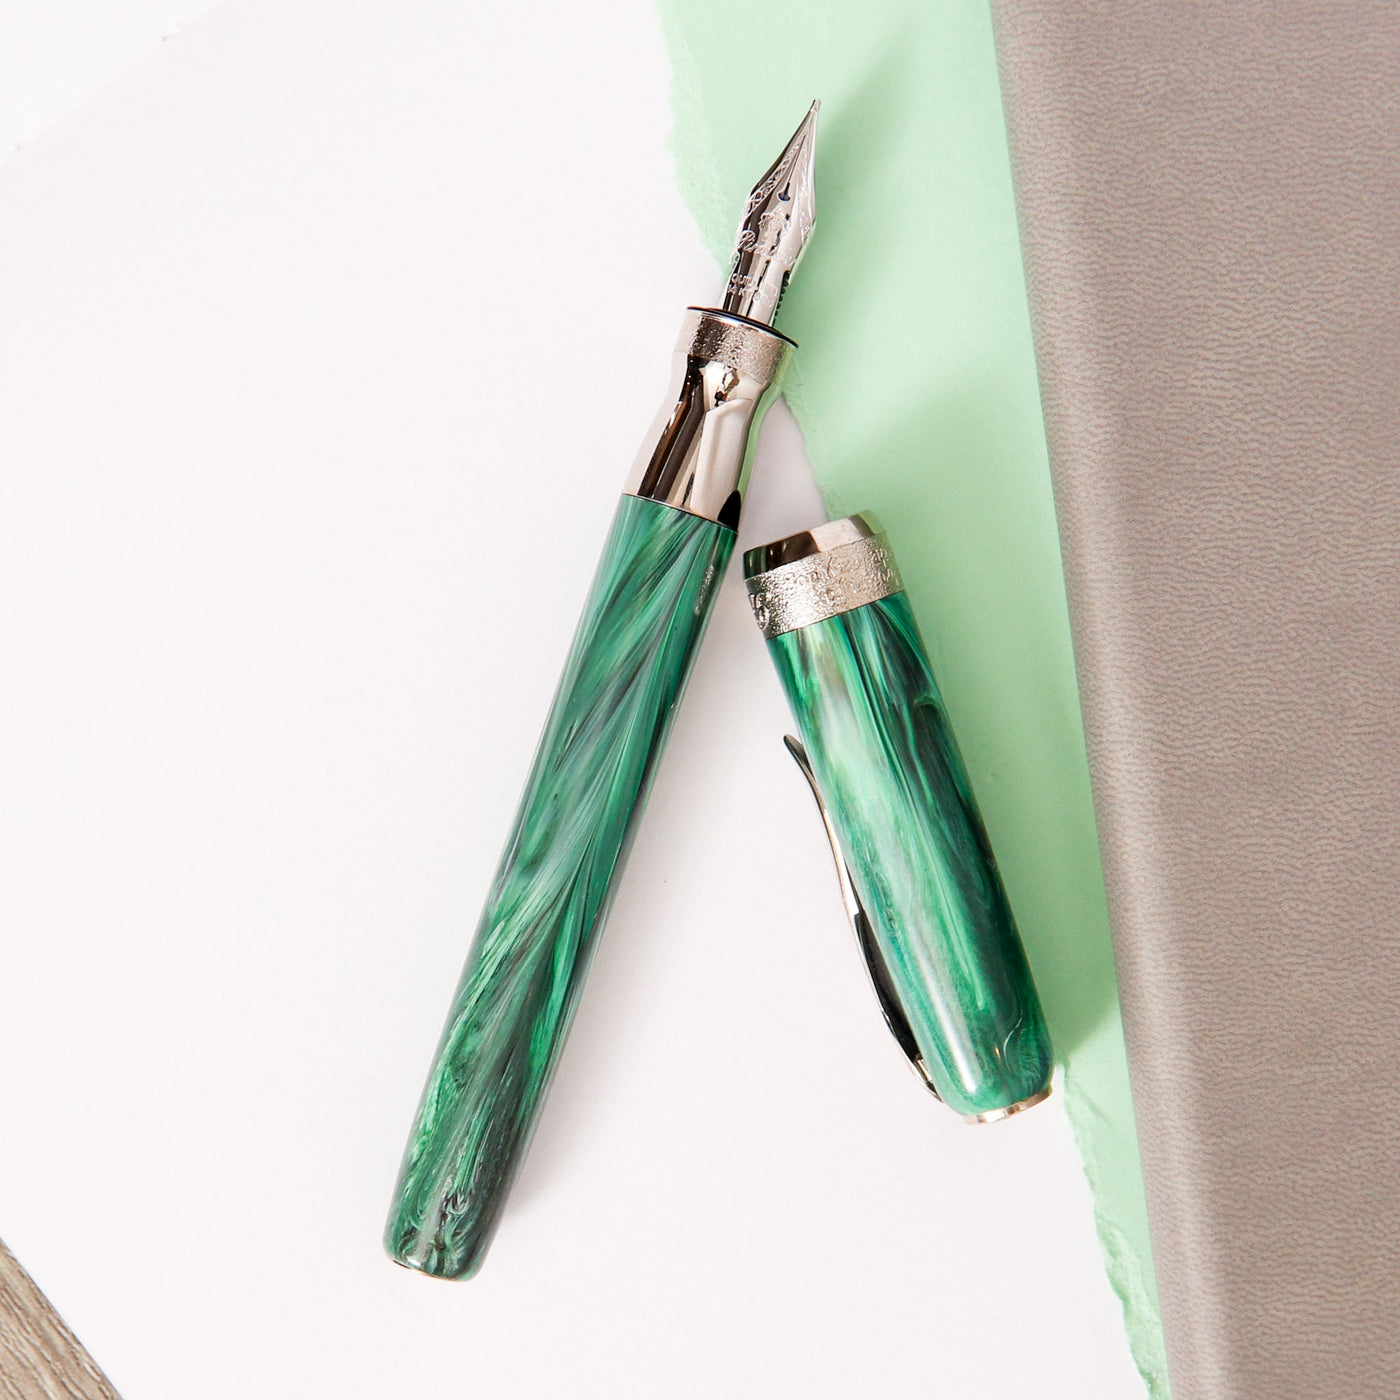 Pineider La Grande Bellezza Gemstone Malachite Fountain Pen Green With Silver Trim